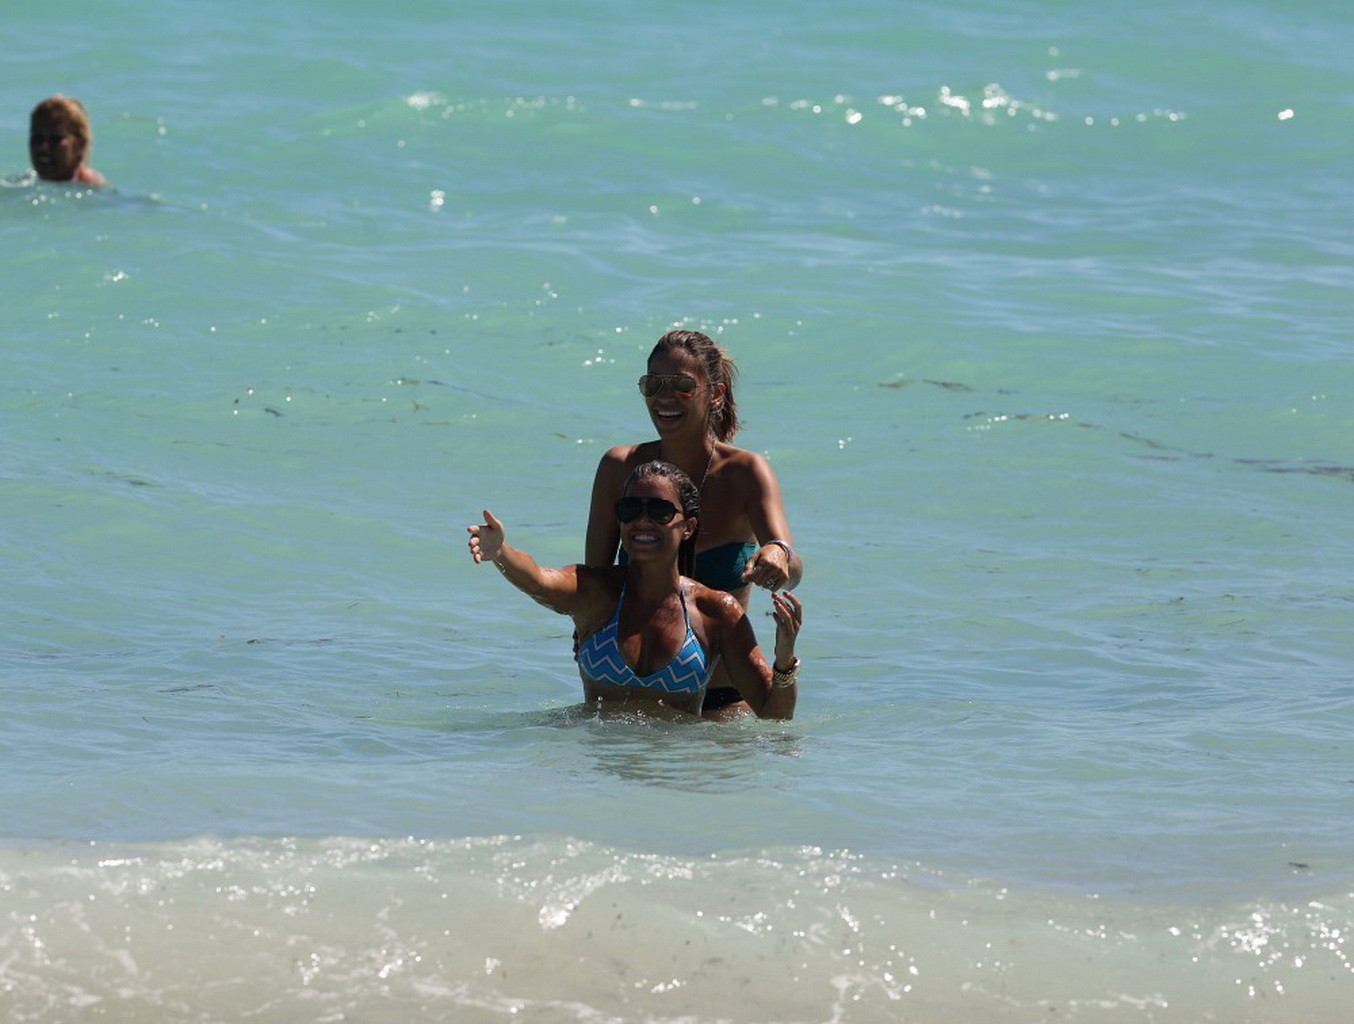 Sylvie van der vaart luciendo un escaso bikini de rayas azules en la playa de miami
 #75216302